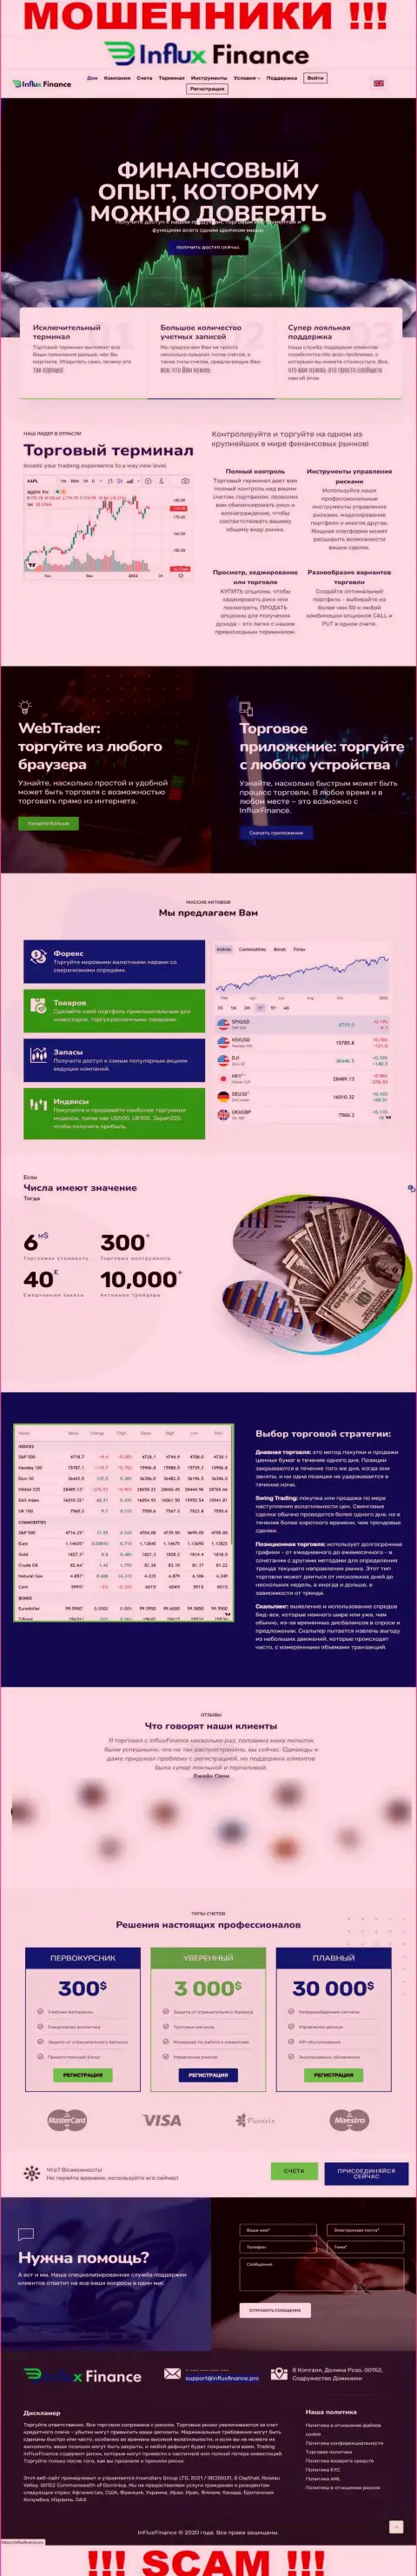 Фейковая информация от компании InFlux Finance на официальном сайте мошенников